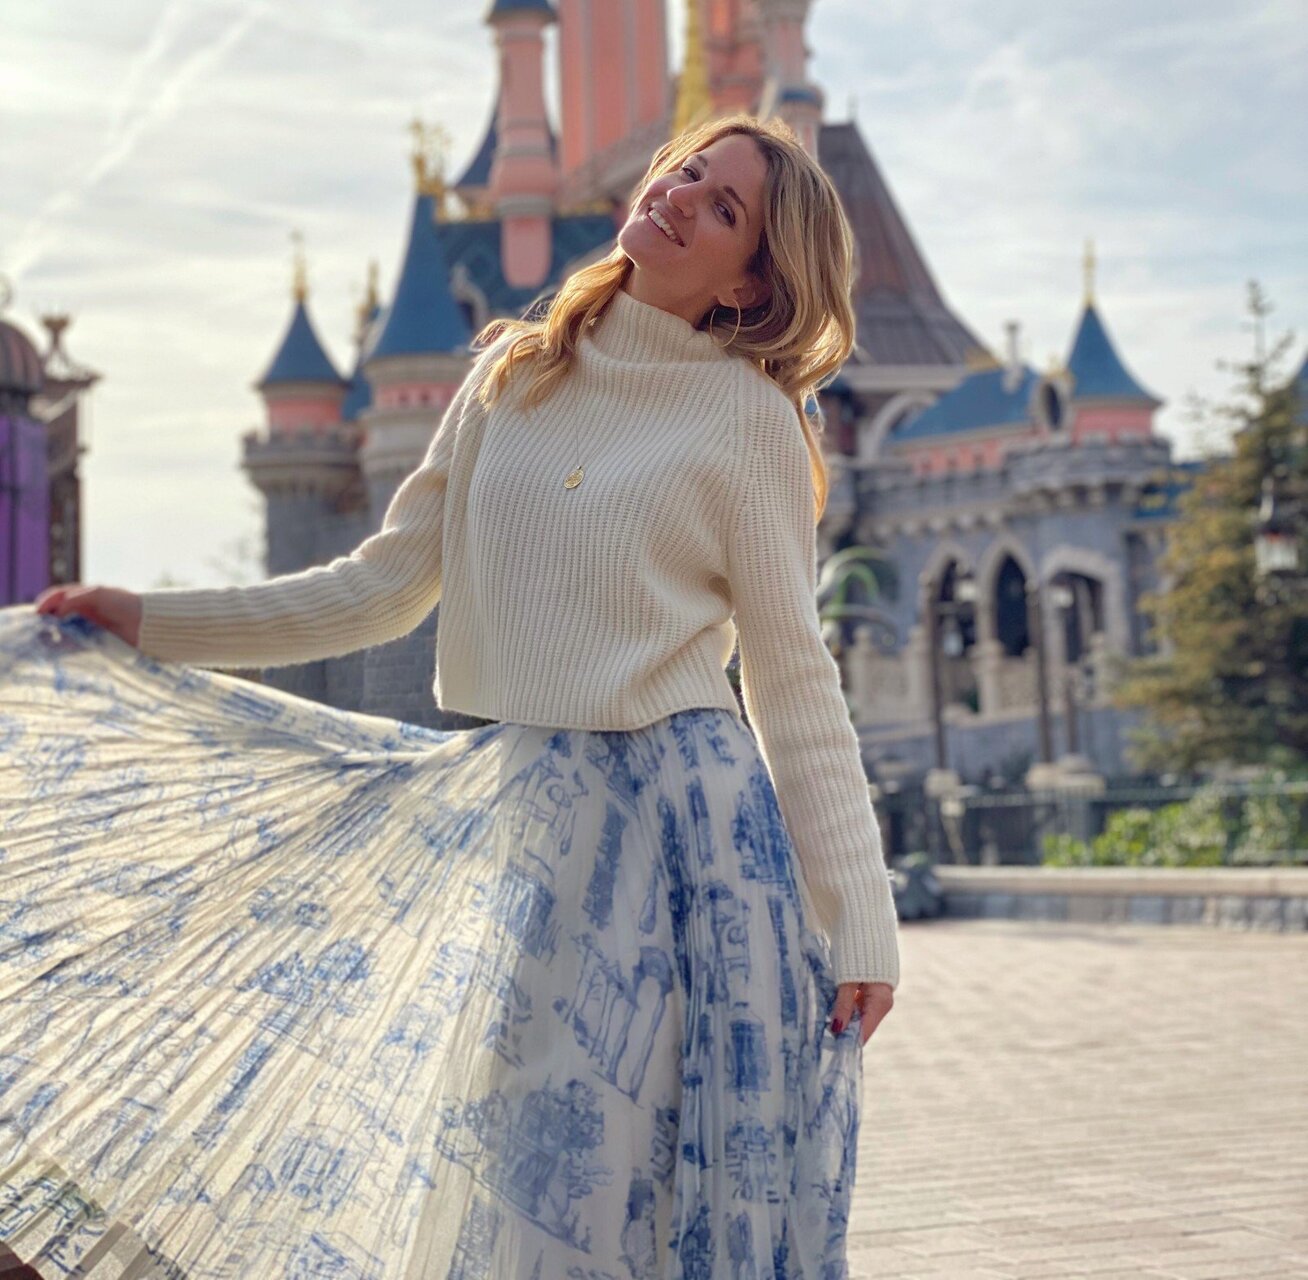 Актриса Женя Малахова сказочно отметила день рождения в Париже, невзирая на развод